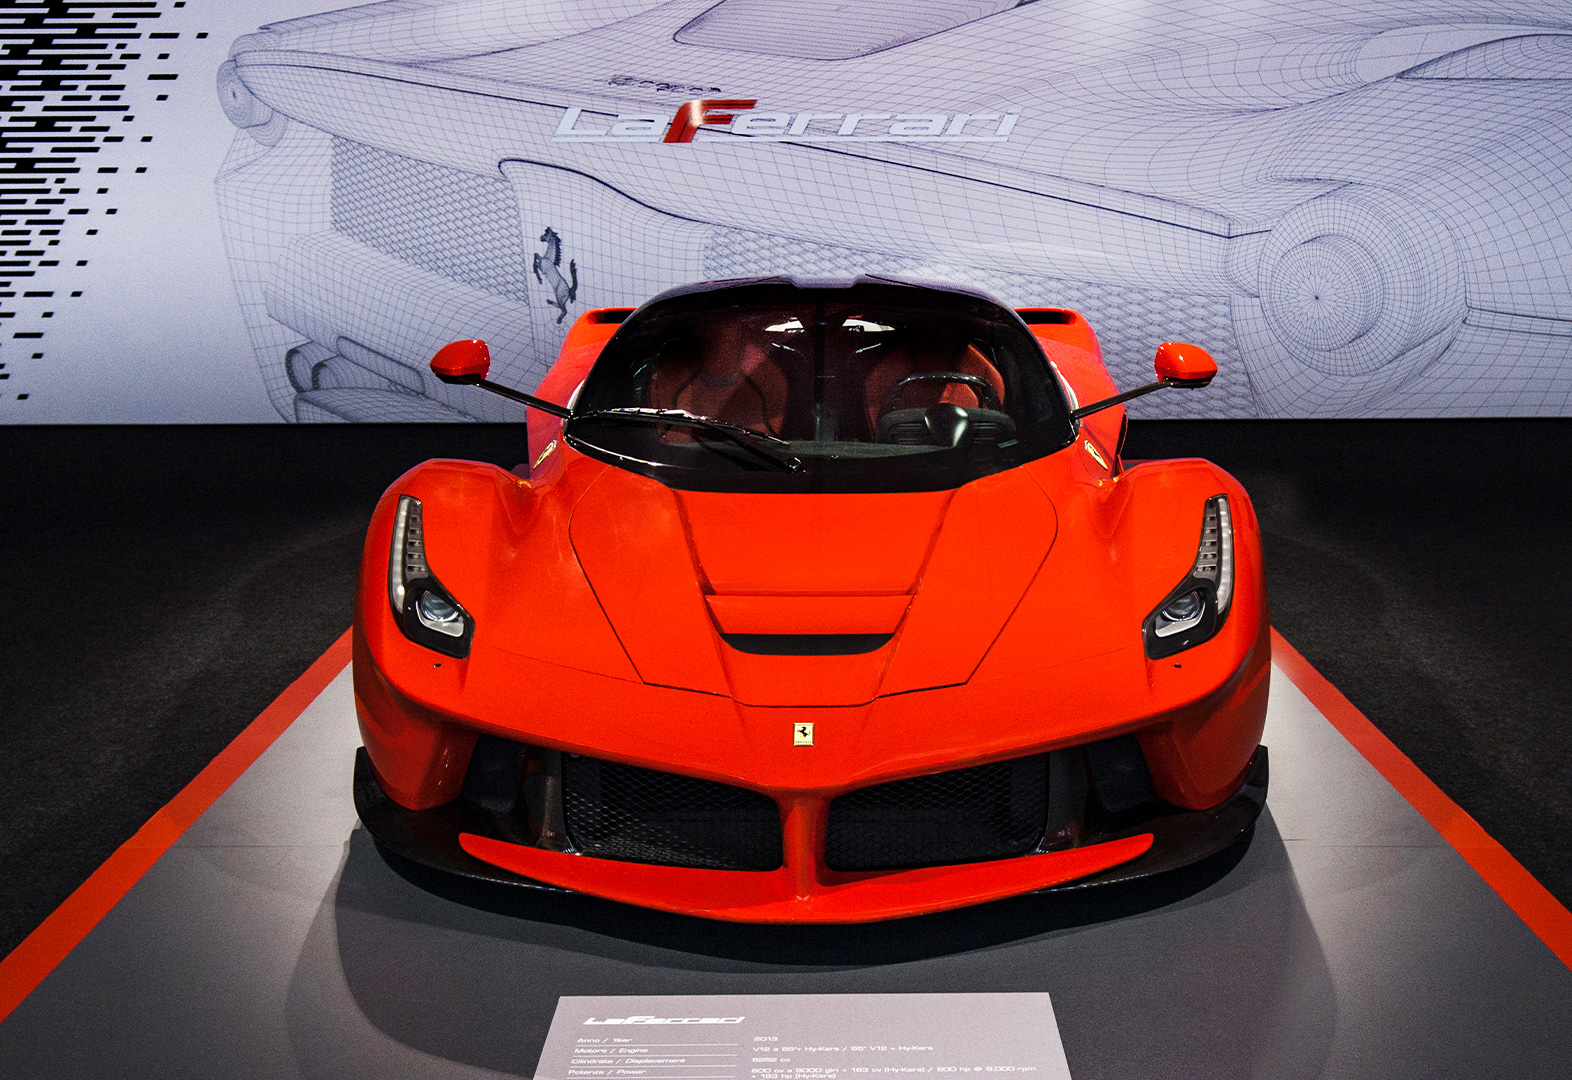 LaFerrari (2013) - Ferrari.com